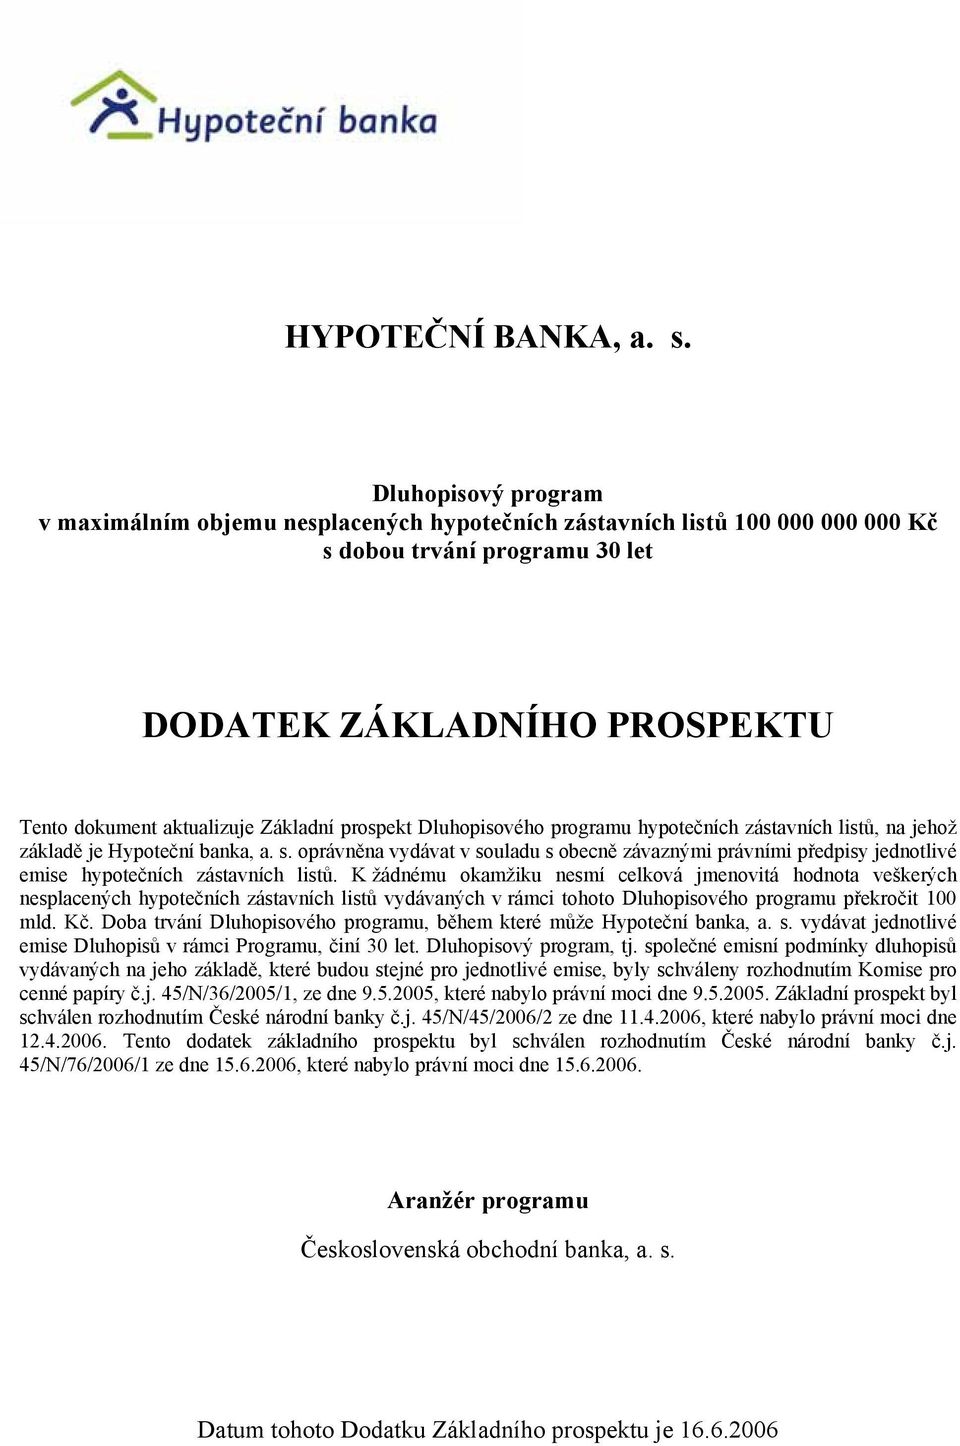 prospekt Dluhopisového programu hypotečních zástavních listů, na jehož základě je Hypoteční banka, a. s.